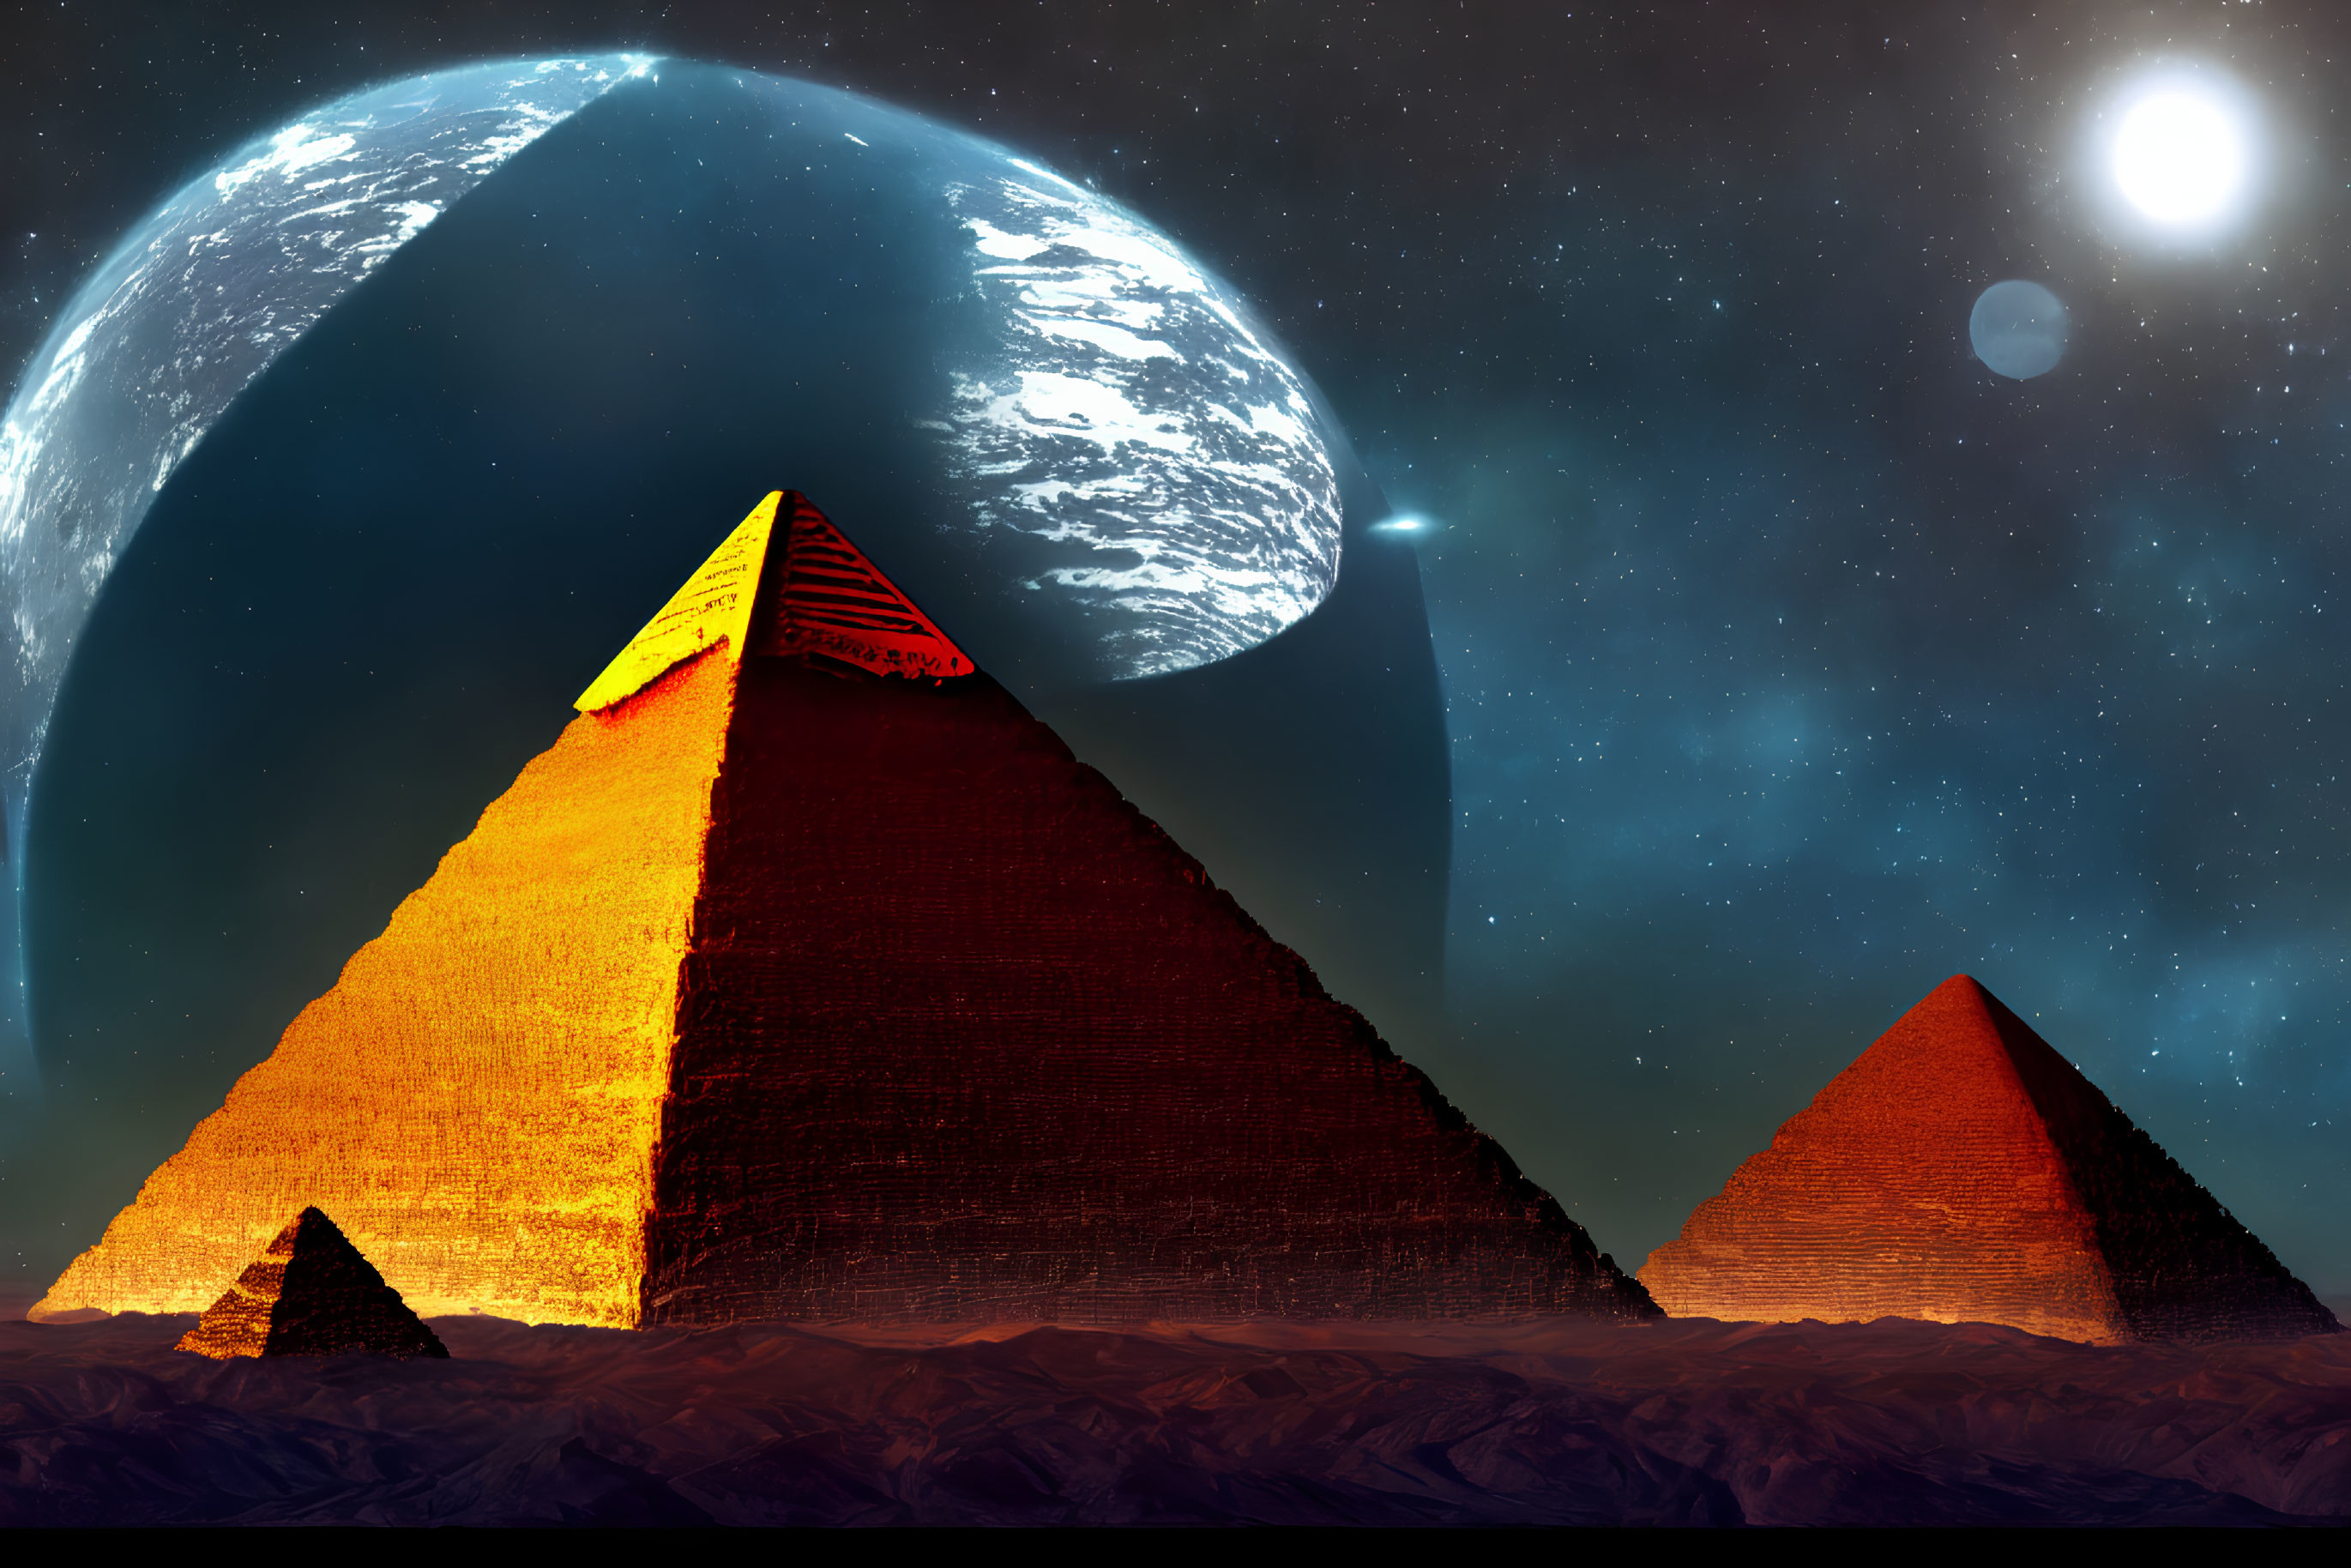 Illuminated Pyramids on Desert Terrain Under Night Sky